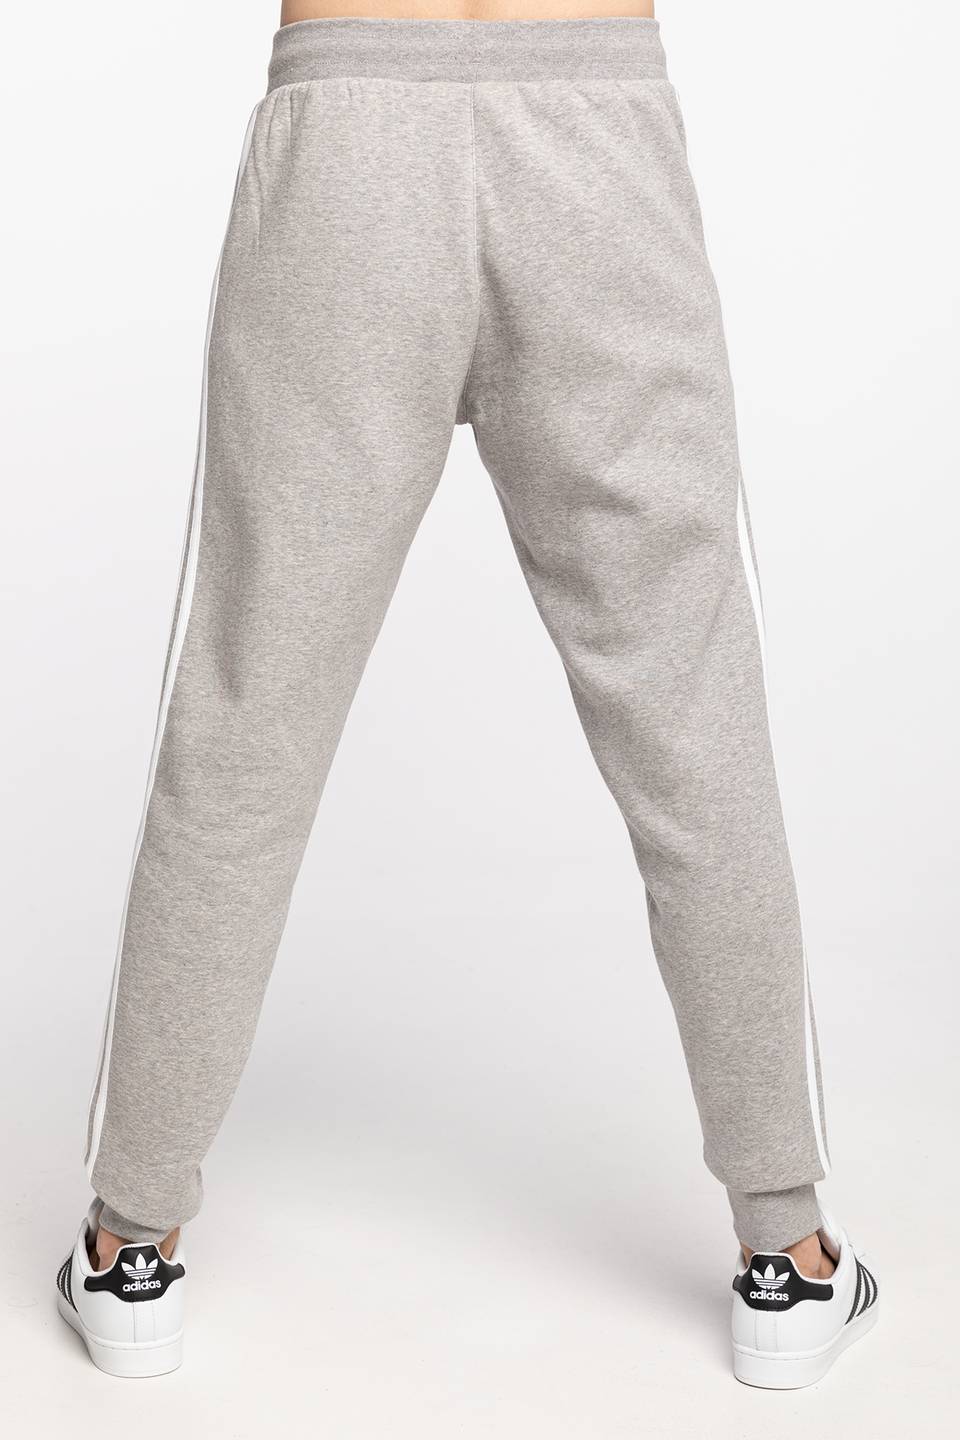 Spodnie adidas DRESOWE 3-STRIPES PANT GN3530